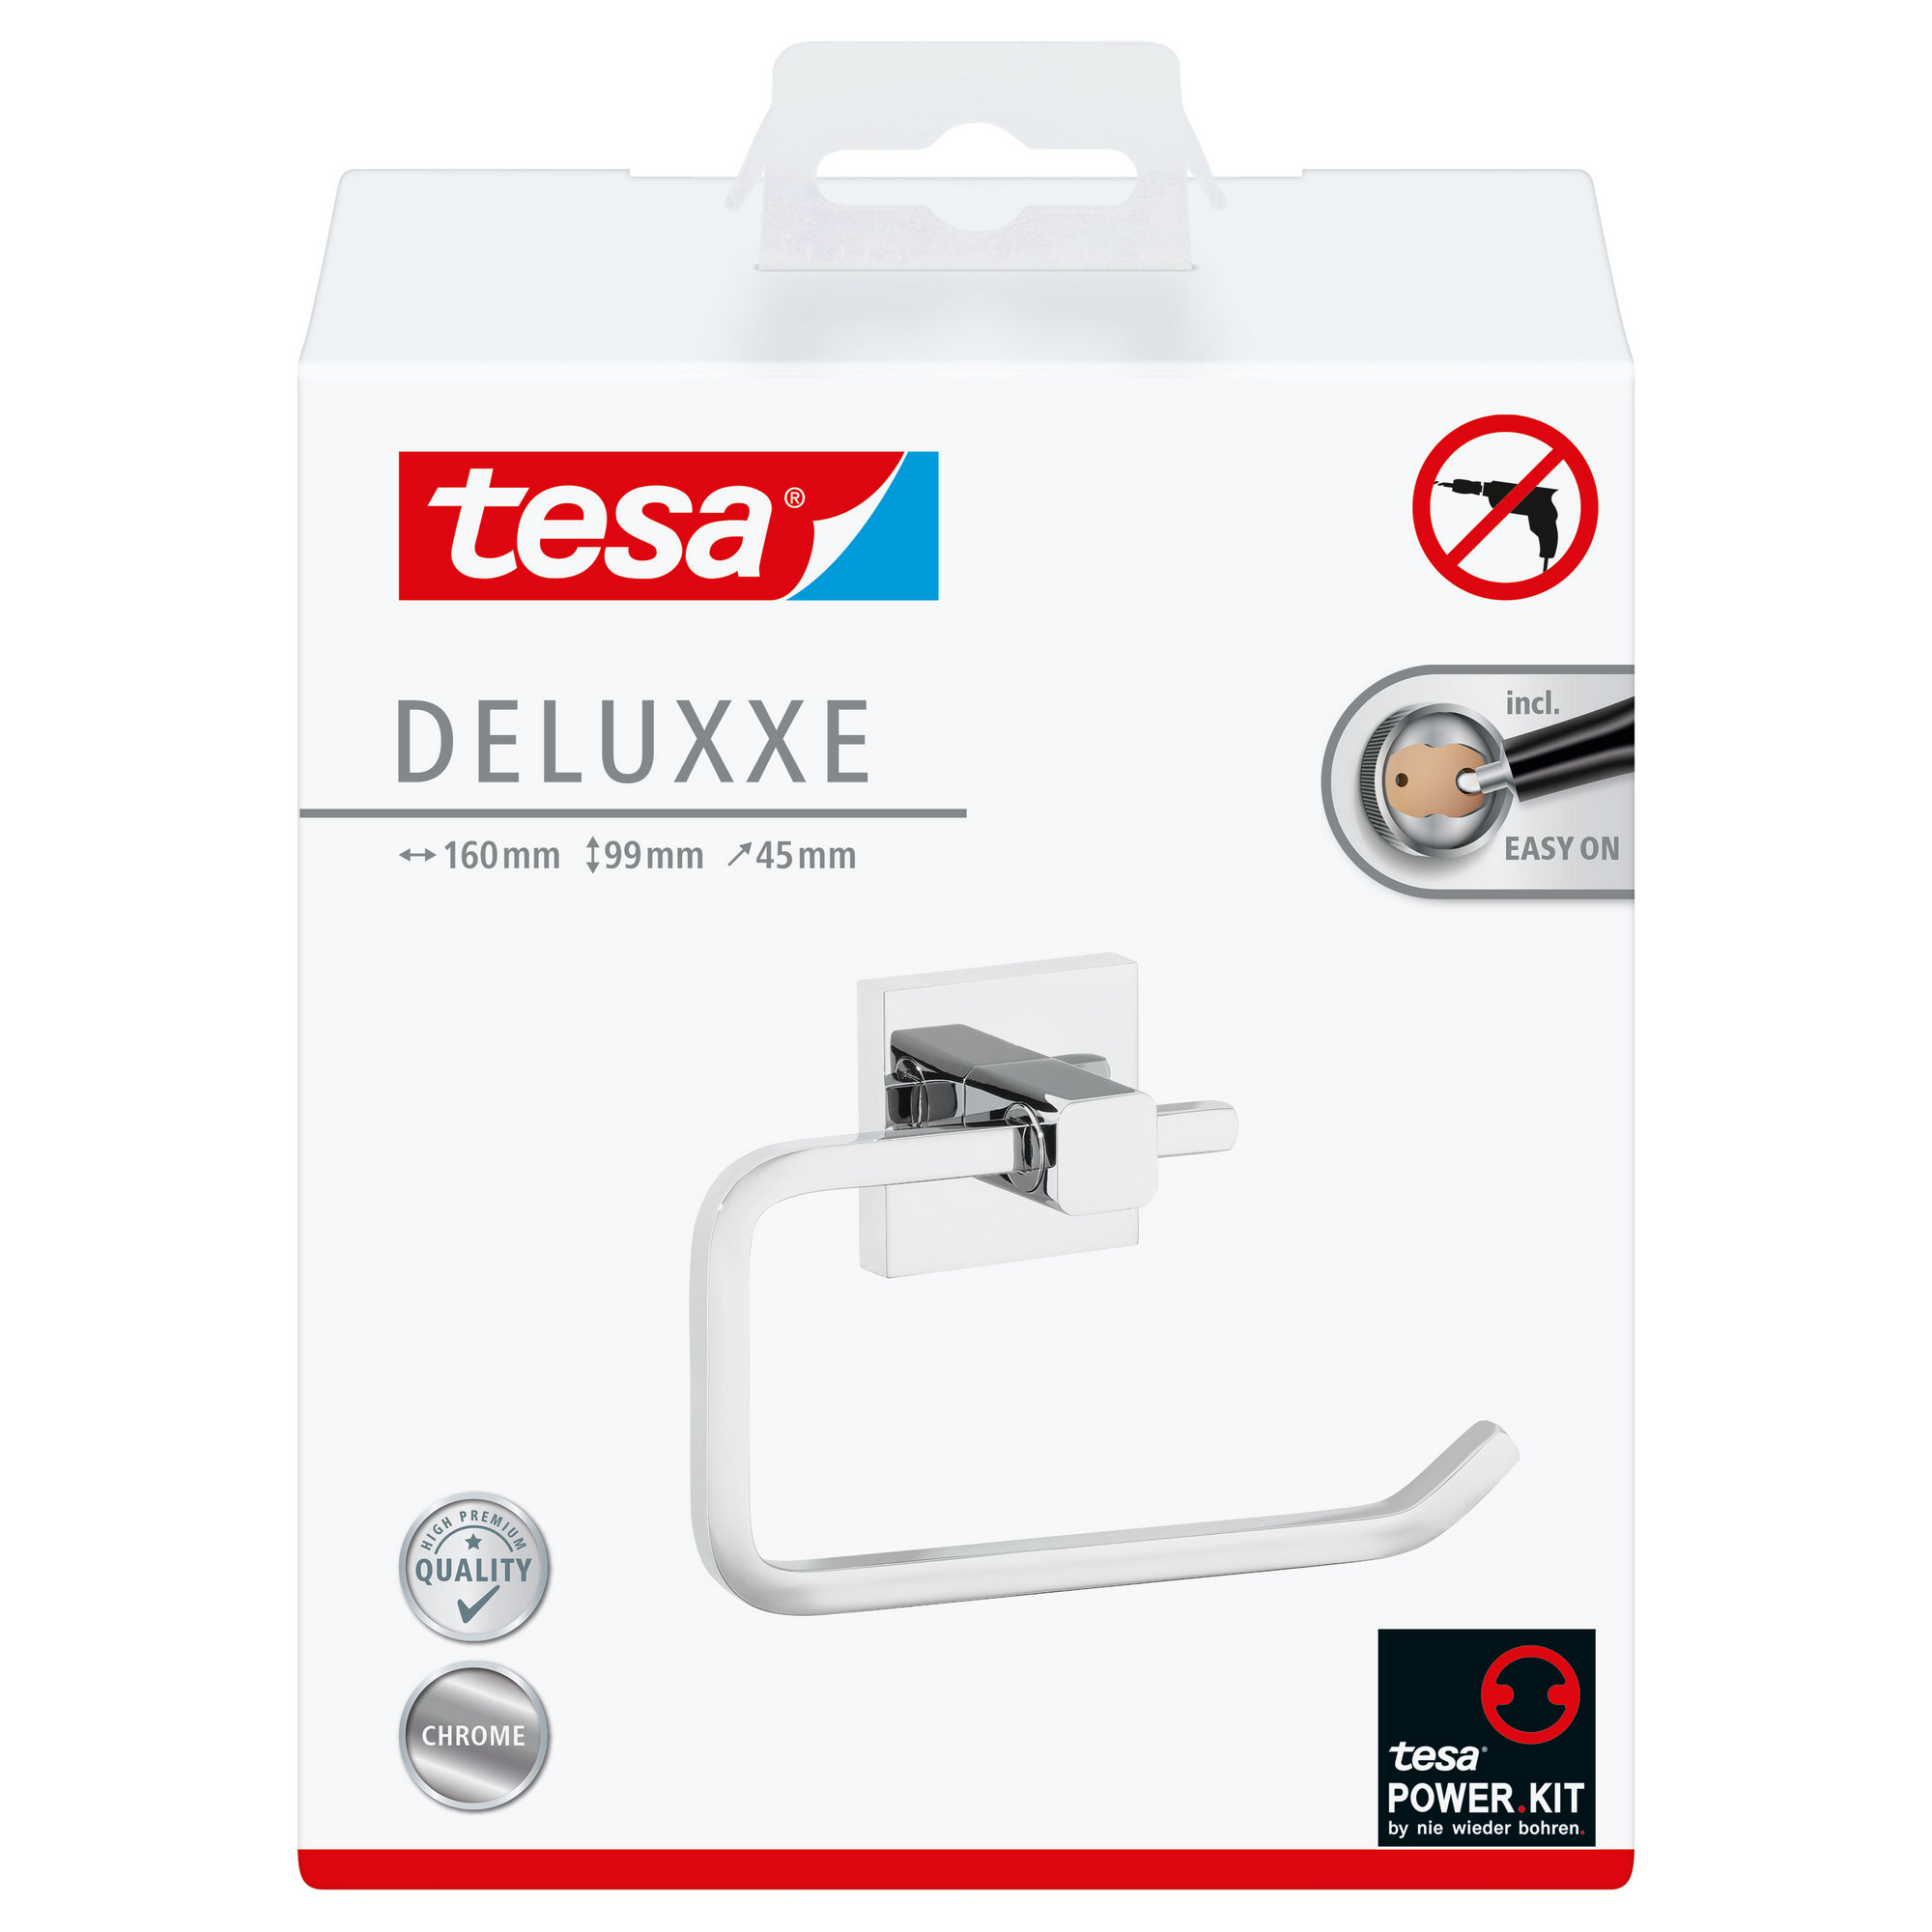 Toilettenpapierhalter 'Deluxxe' Metall verchromt ohne Deckel, mit Klebelösung + product picture